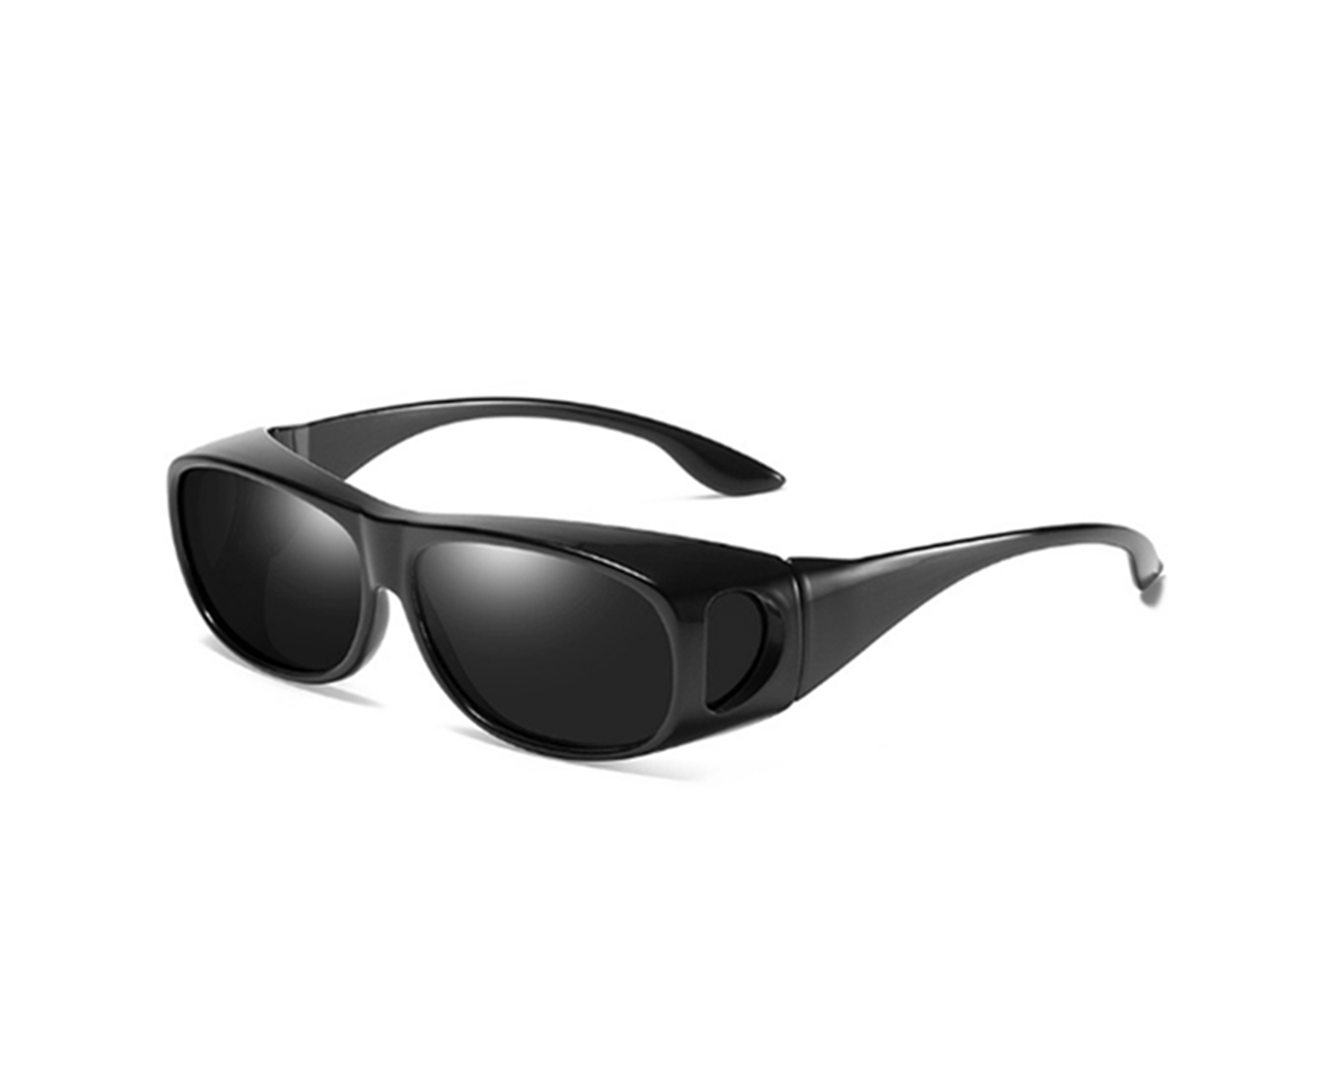 HD Sunglasses Night Driving Glasses Anti-Glare Wear Over Glasses - 1